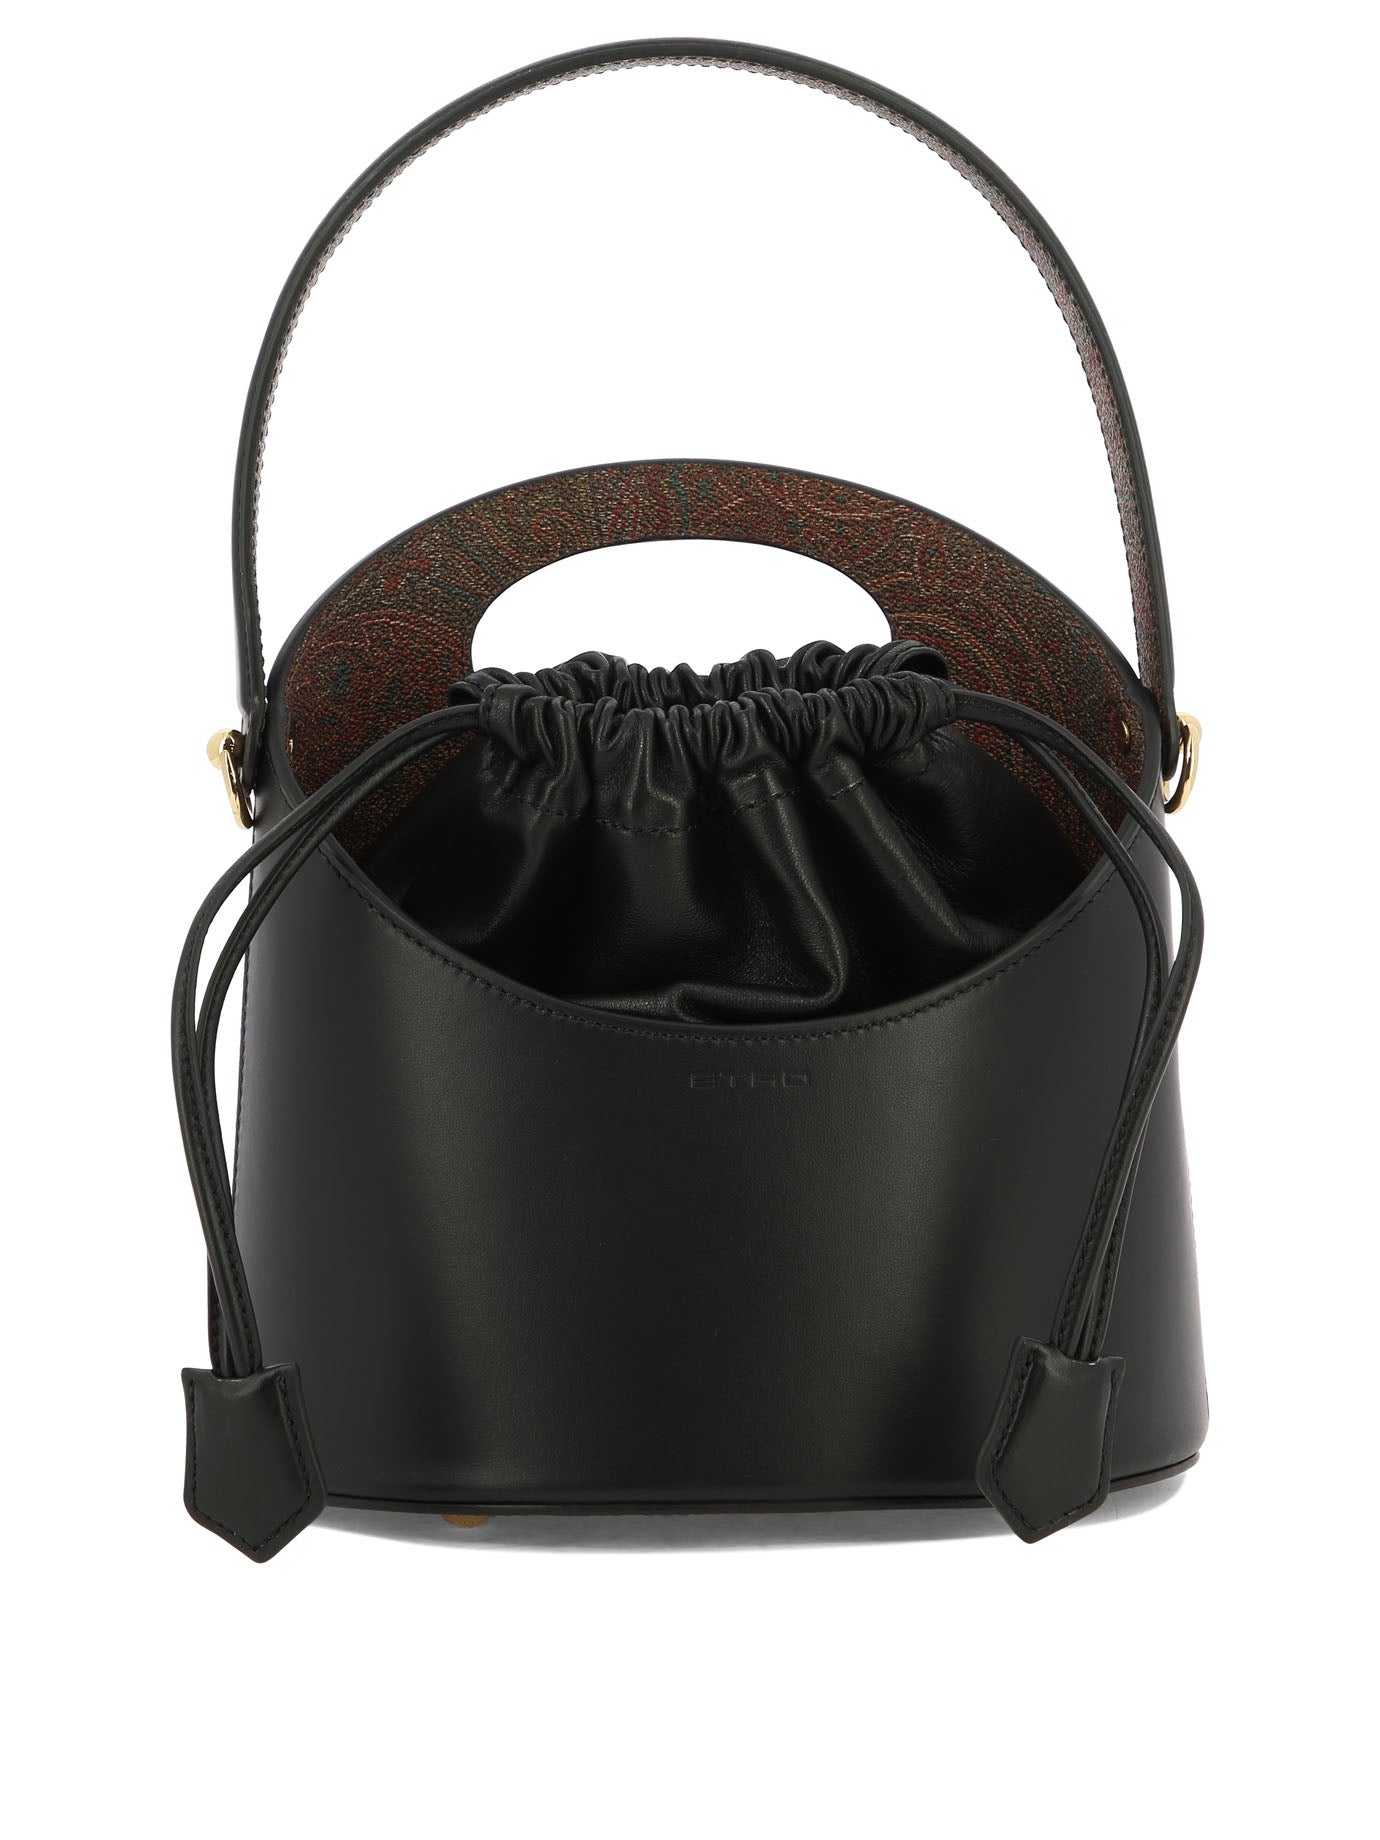 Etro - Leather Shoulder Bag Black - Onesize